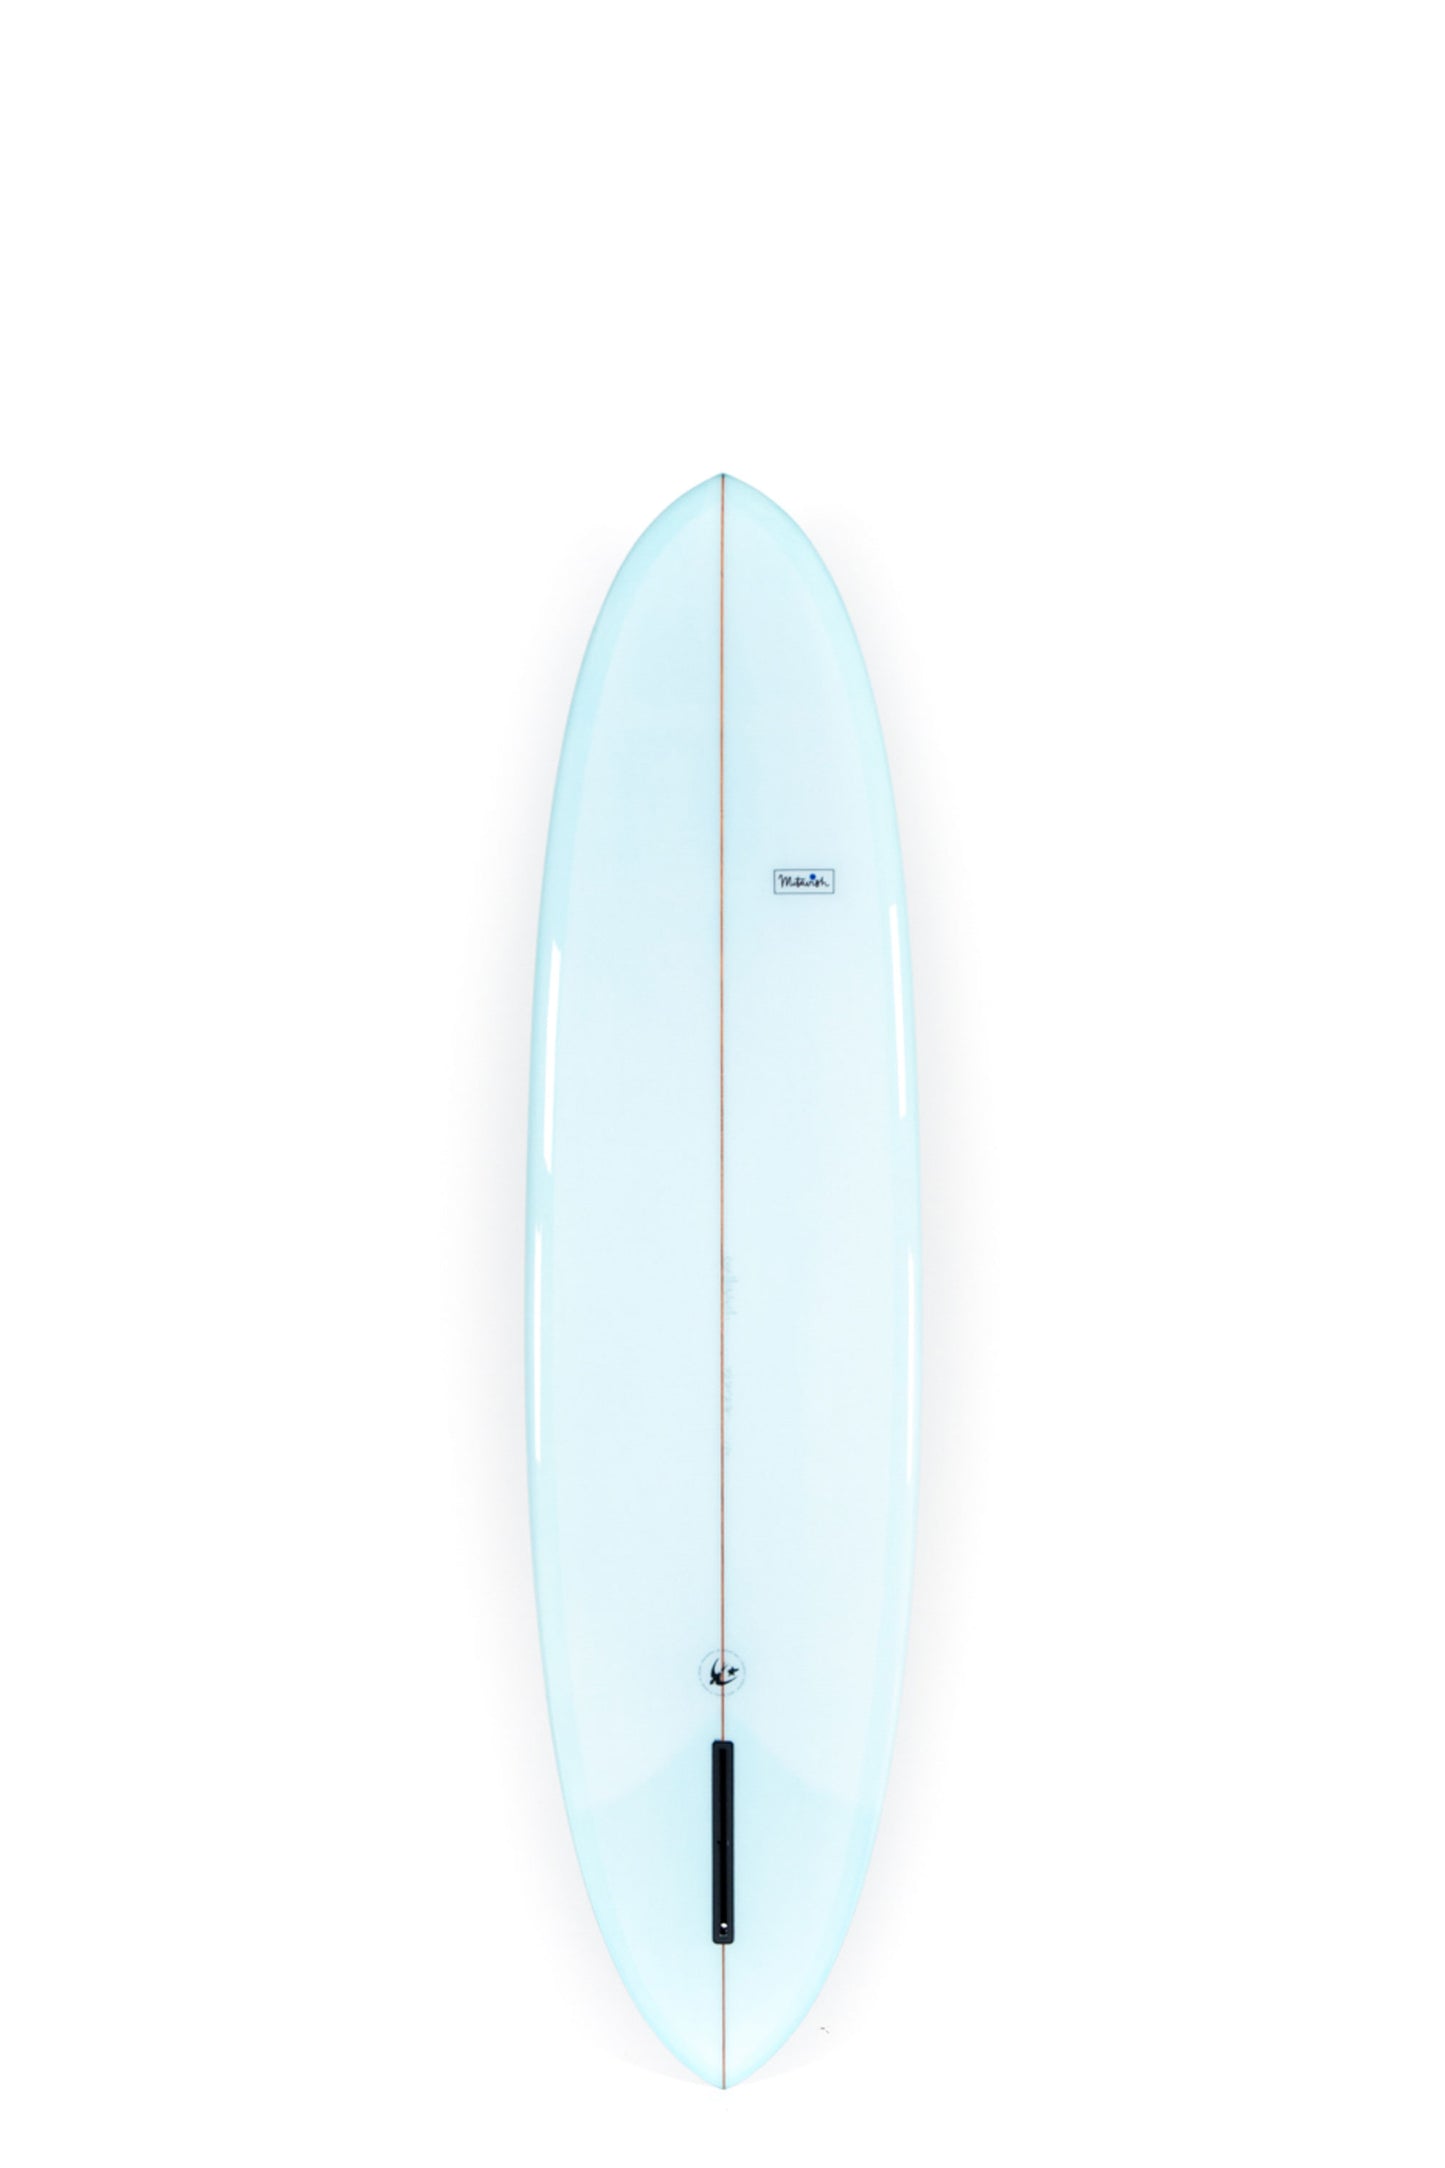 Brushed Twill Jacket – McTavish Surfboards